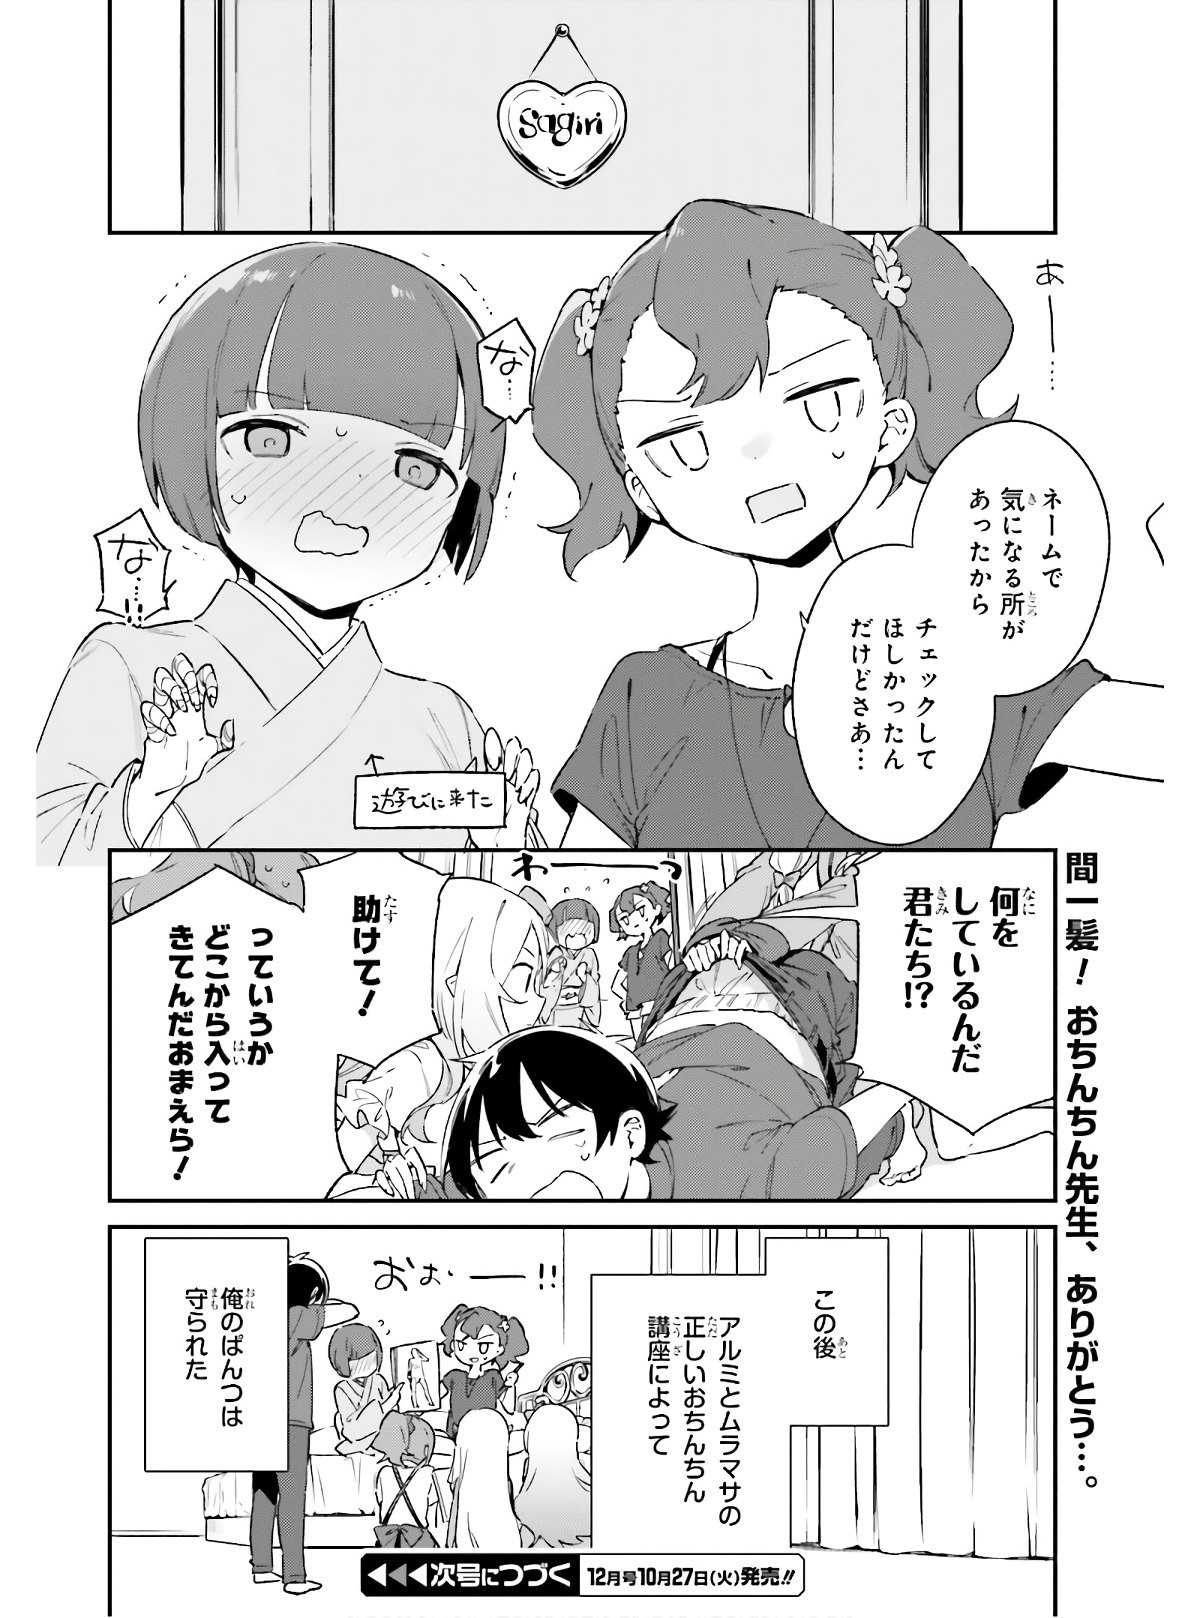 Ero Manga Sensei - Chapter 72 - Page 22